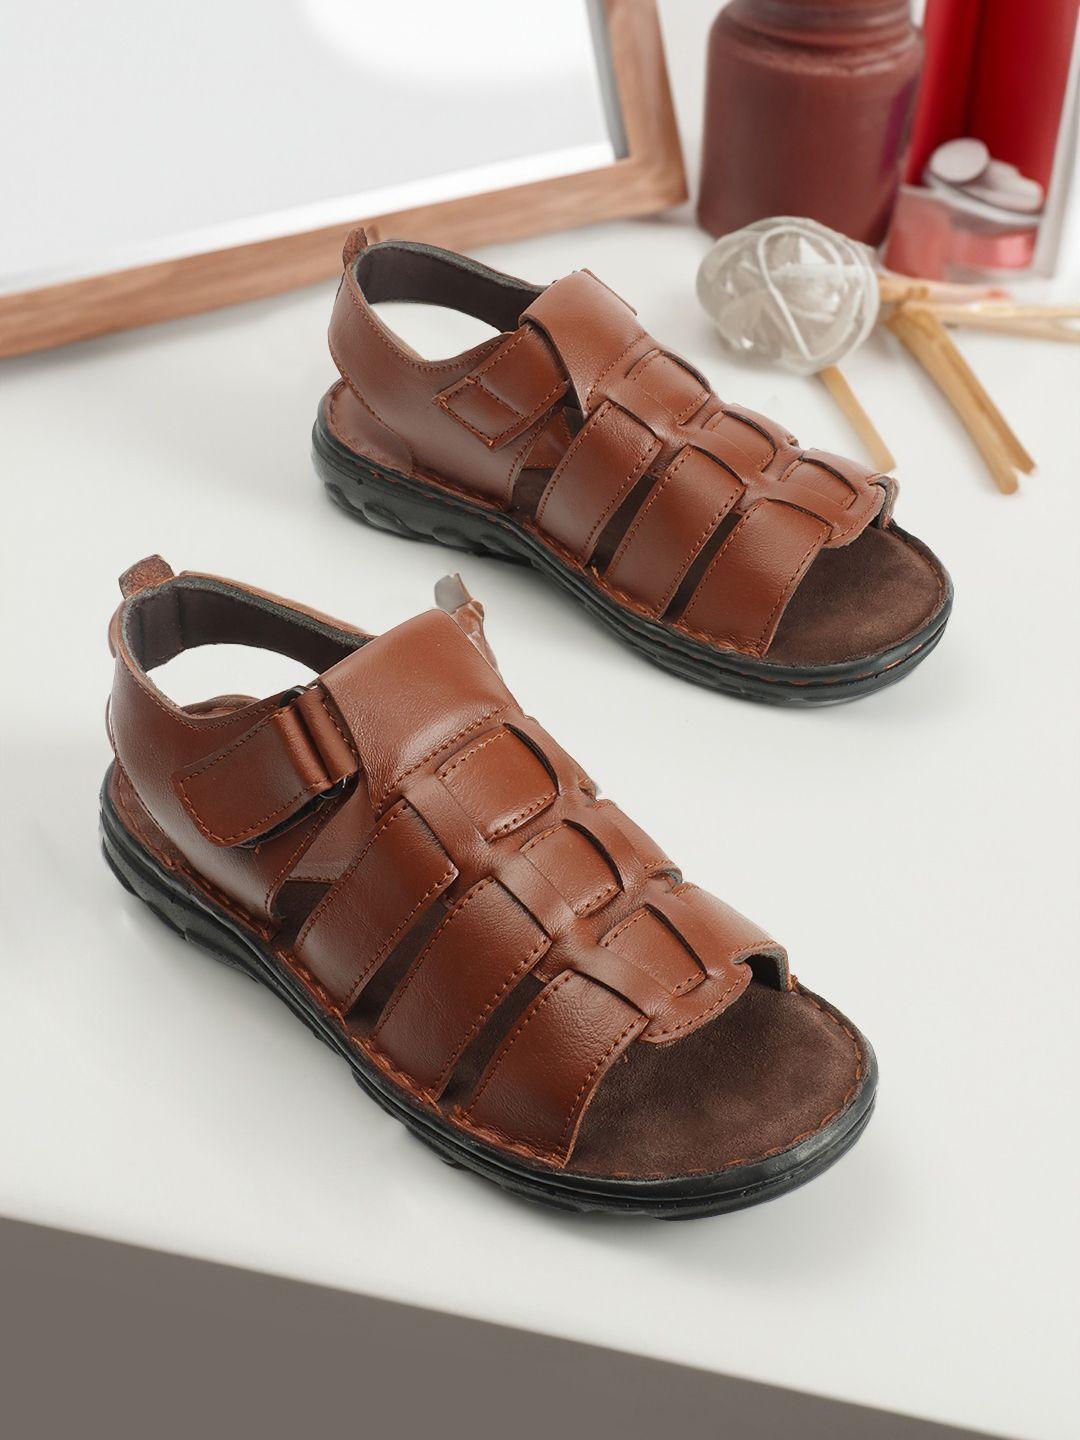 carlton london men perforated comfort sandals